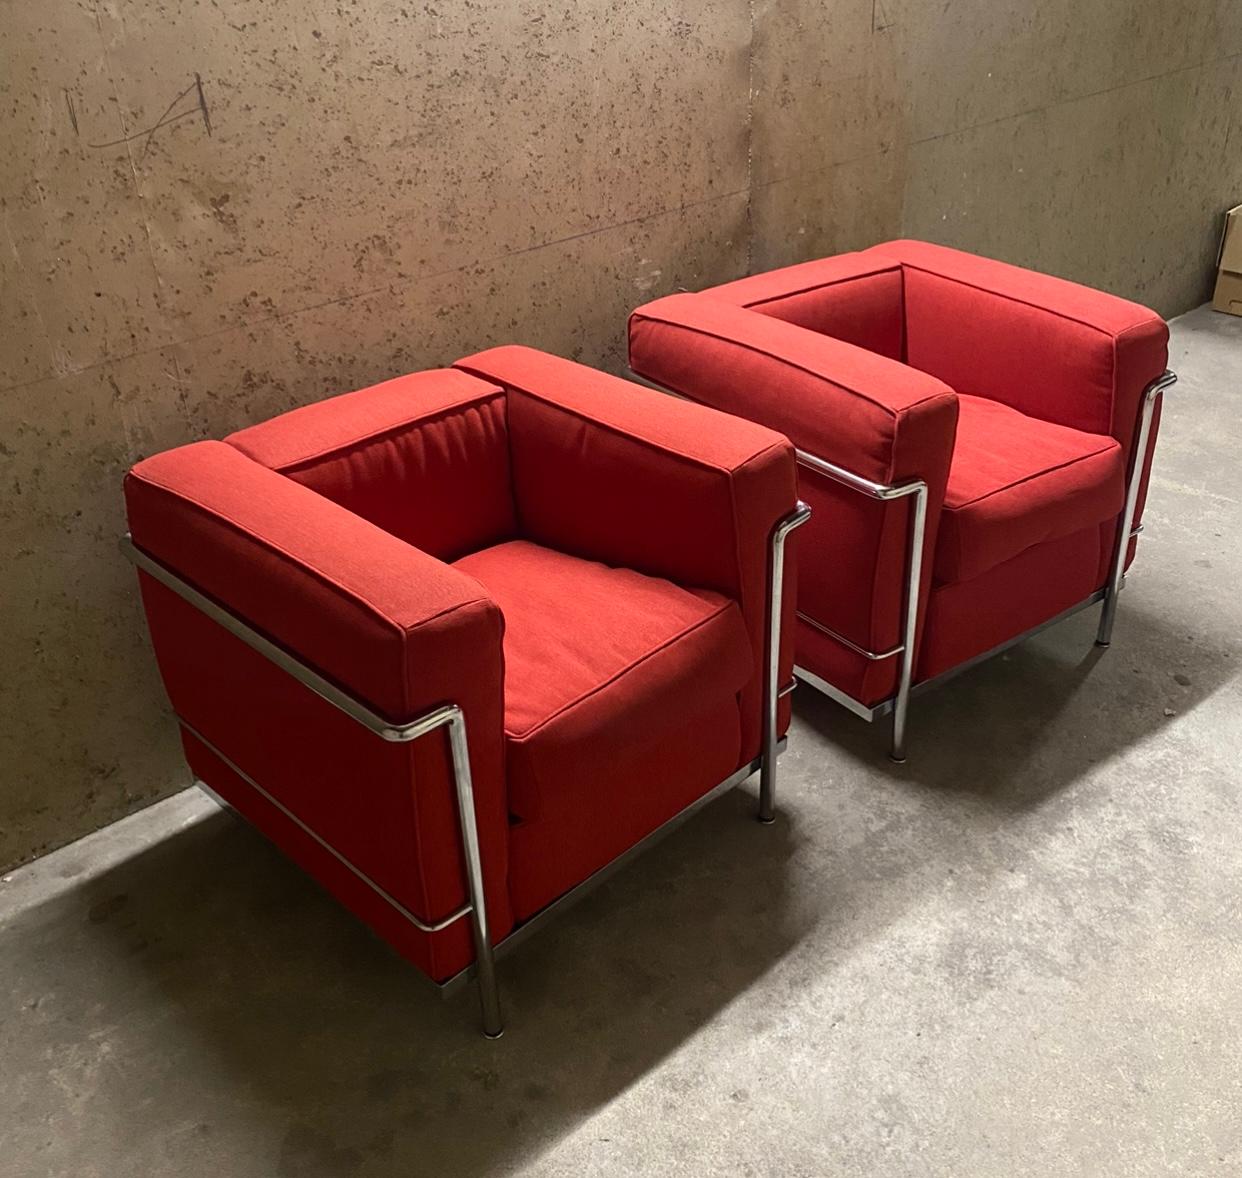 Une paire de chaises LC2 conçues par Le Corbusier et fabriquées par Cassina en Italie.
En bon état.
Rembourré avec du textile.
Signé